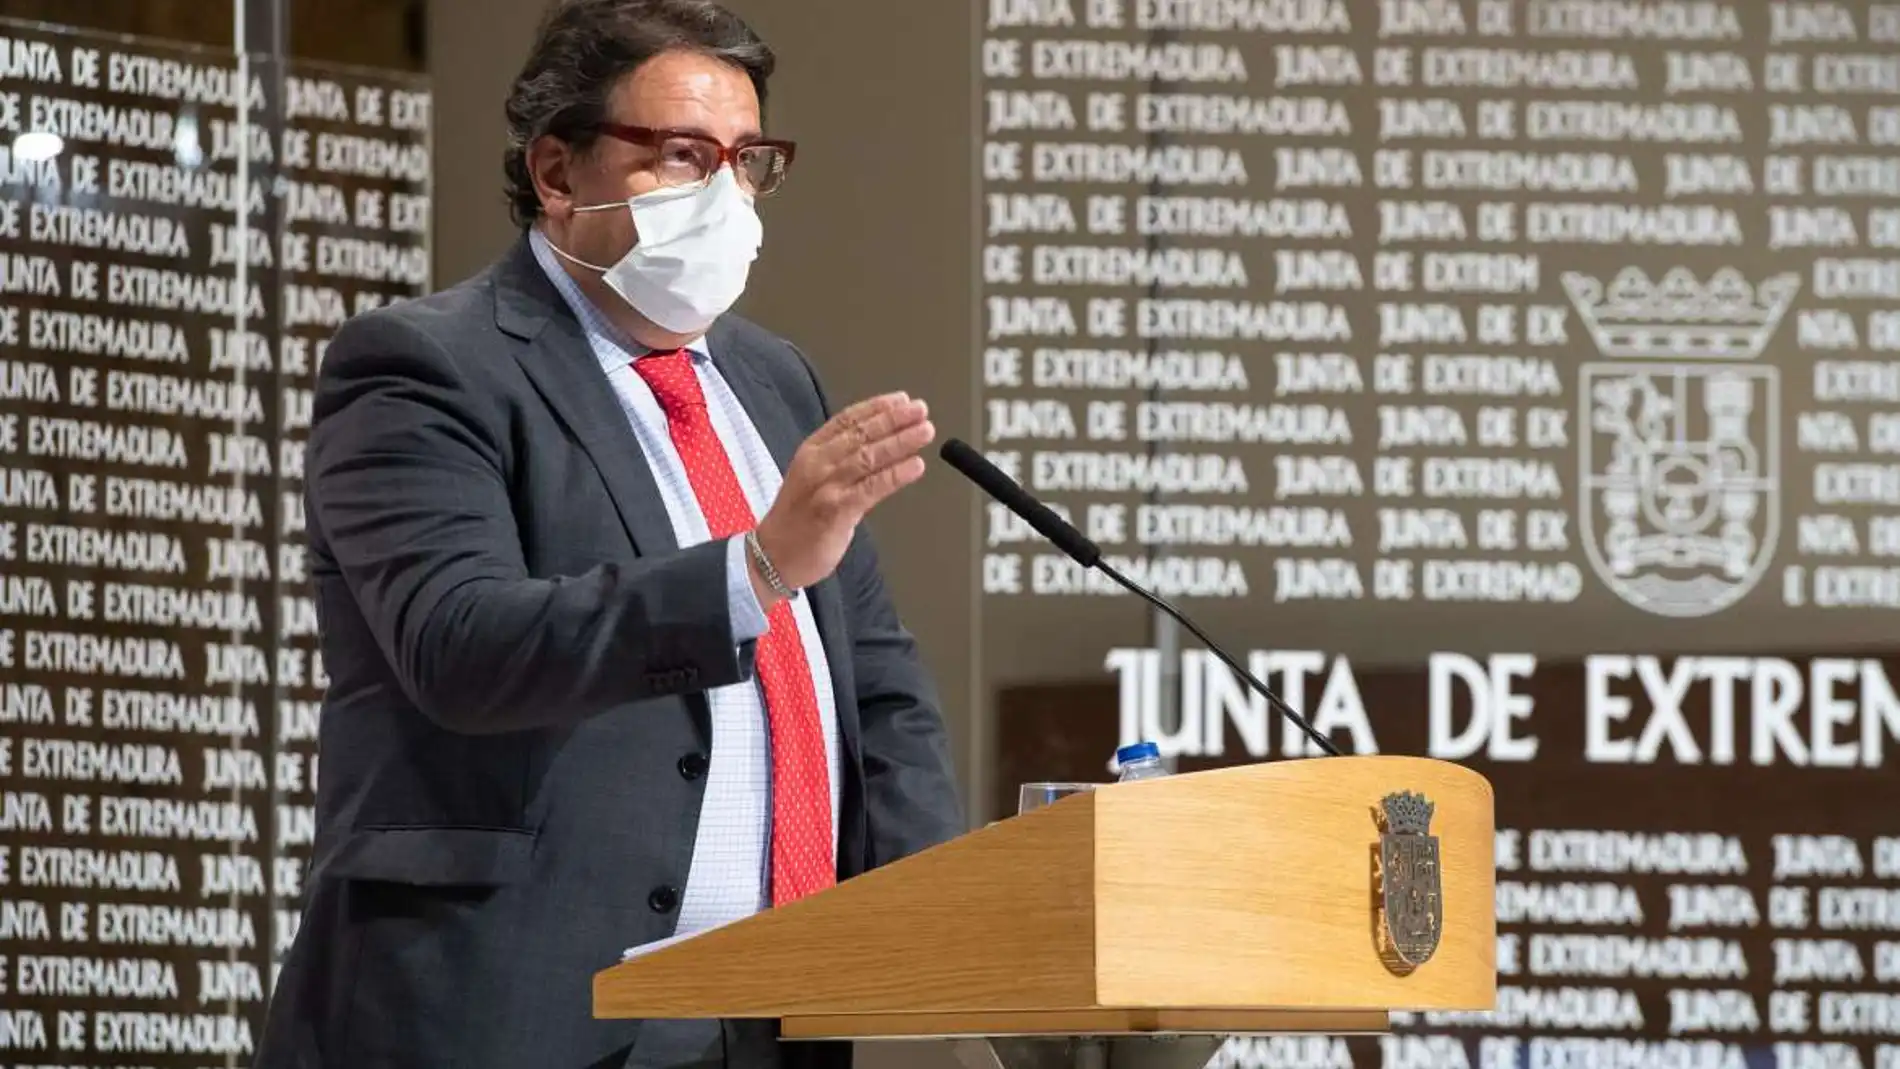 El consejero de Sanidad dice que no tienen noticias de incidentes de relevancia en Extremadura pero llama a no bajar la guardia 